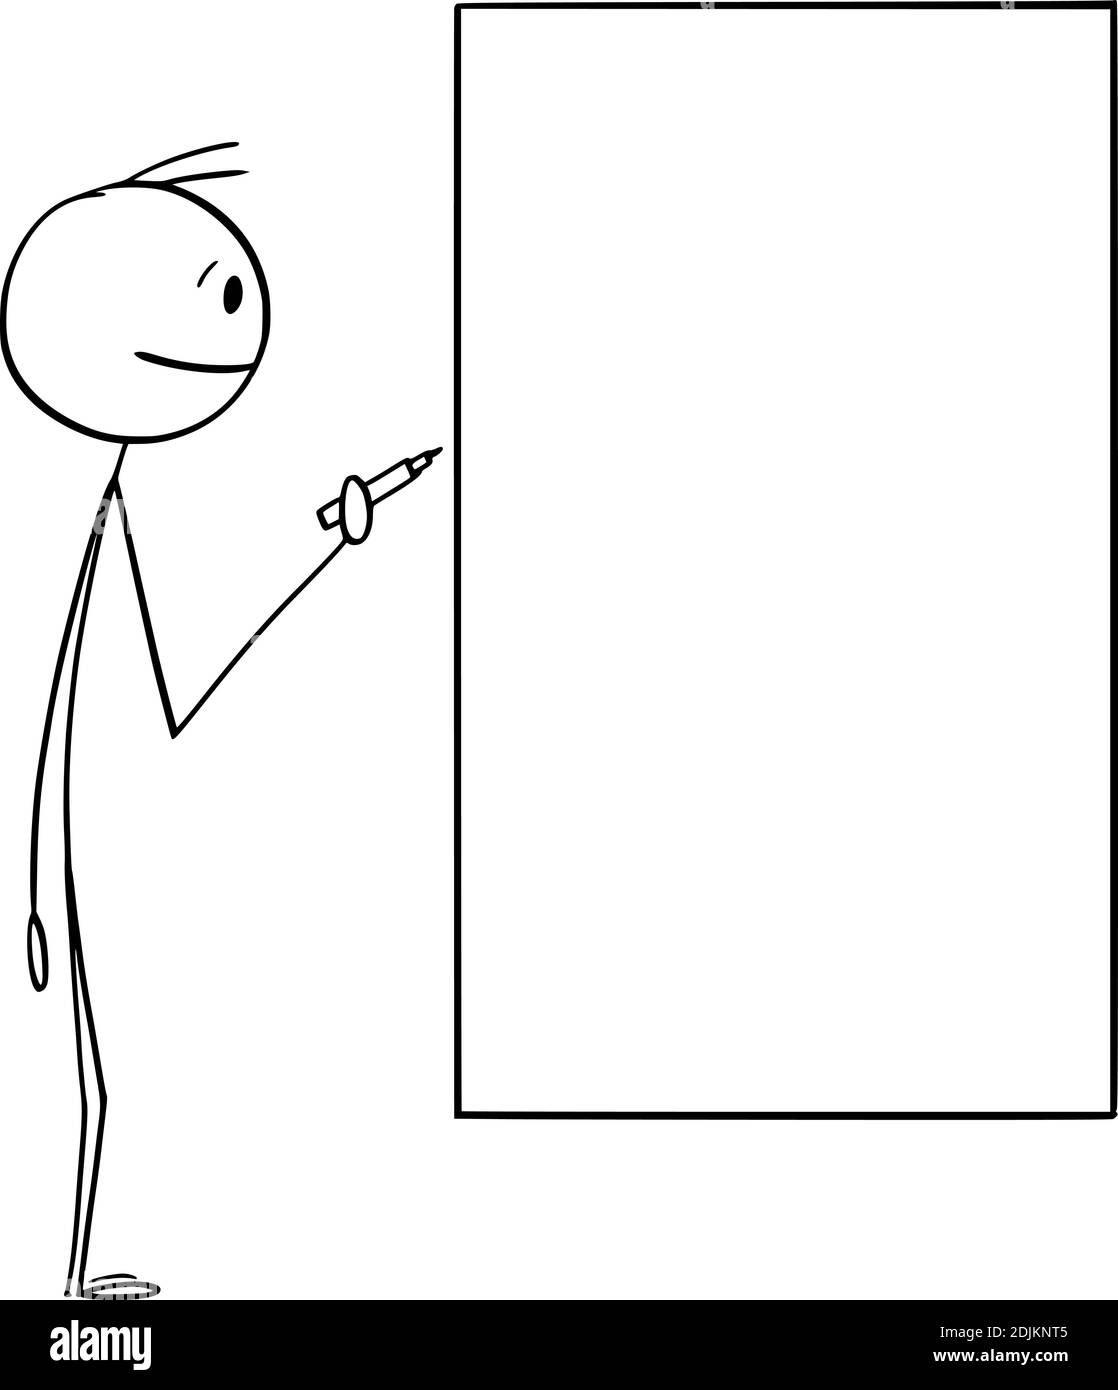 Vektor Cartoon Stick Figur Illustration von Mann oder Geschäftsmann halten Marker bereit, auf leeren weißen Brett zu schreiben. Platz kopieren, um Text hinzuzufügen. Stock Vektor